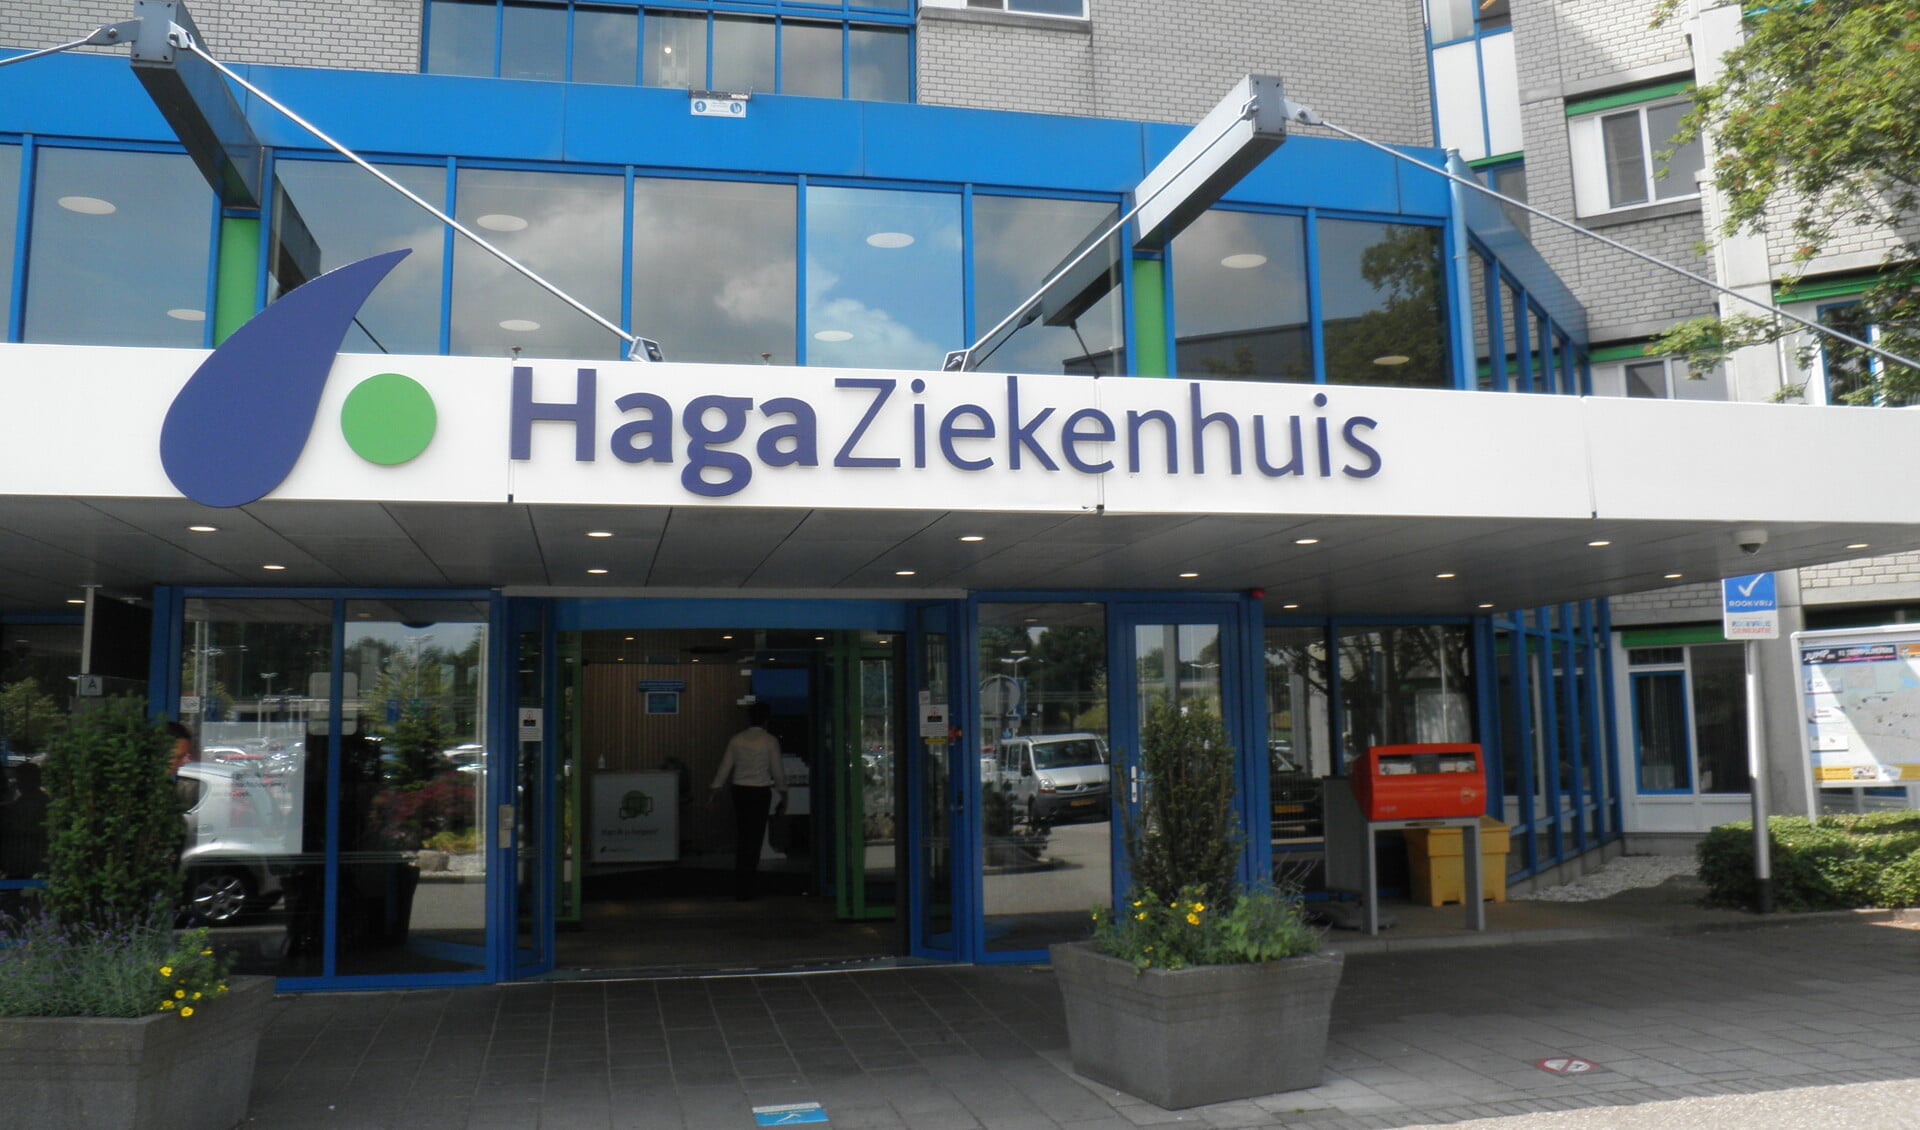 De naam van het LangeLand Ziekenhuis is sinds maart Haga Ziekenhuis. Foto Kees van Rongen 